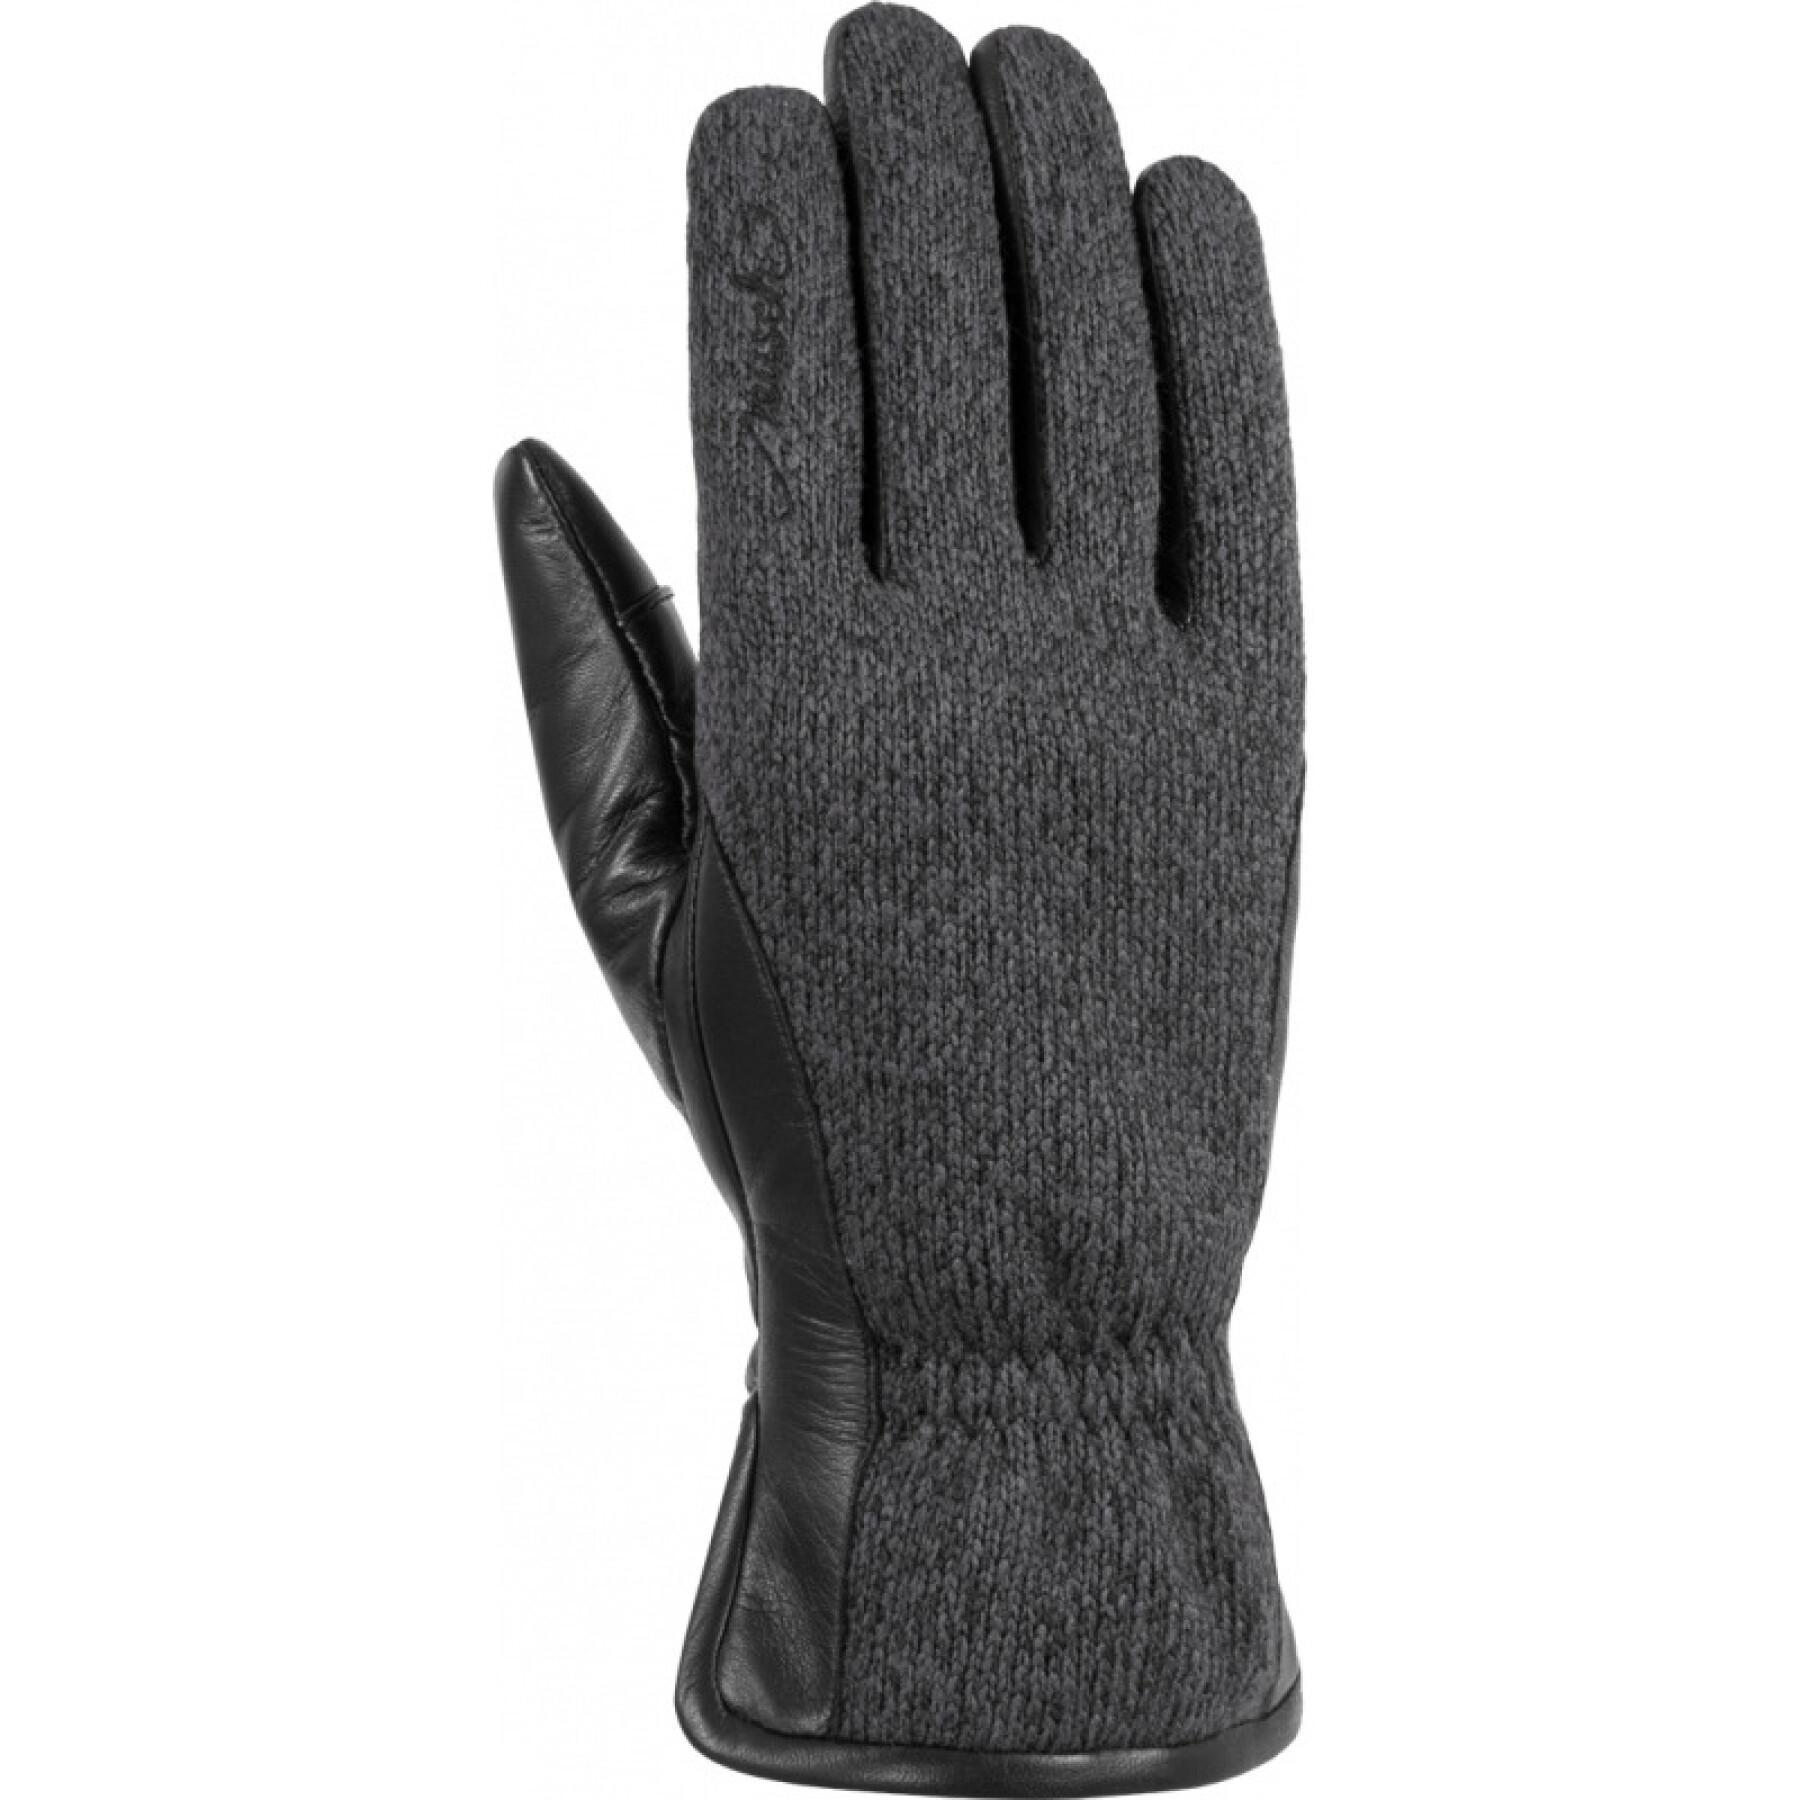 Gloves Reusch Verona Touch-tec